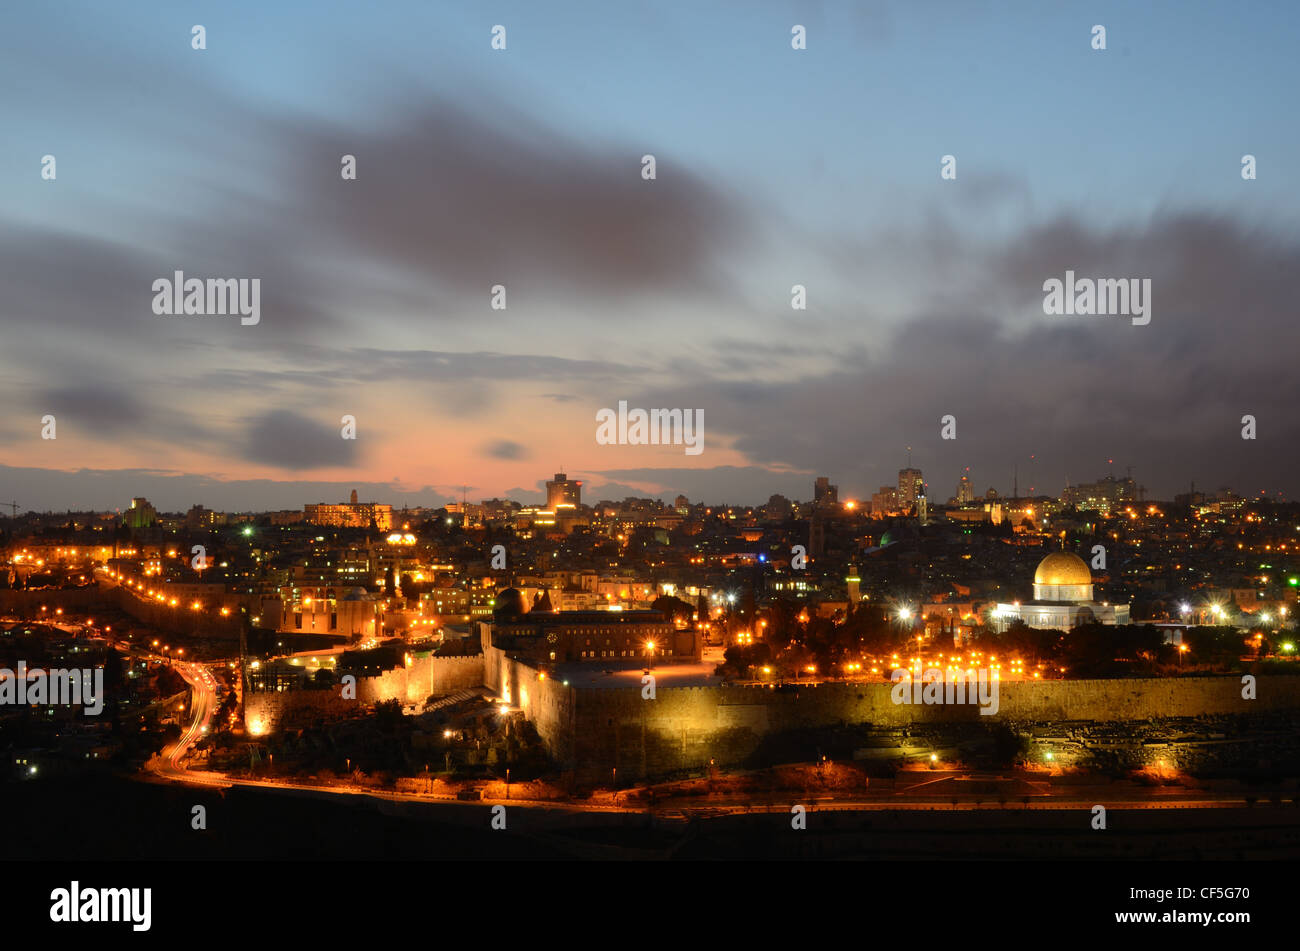 El horizonte de la Ciudad Vieja de Jerusalén, Israel. Foto de stock